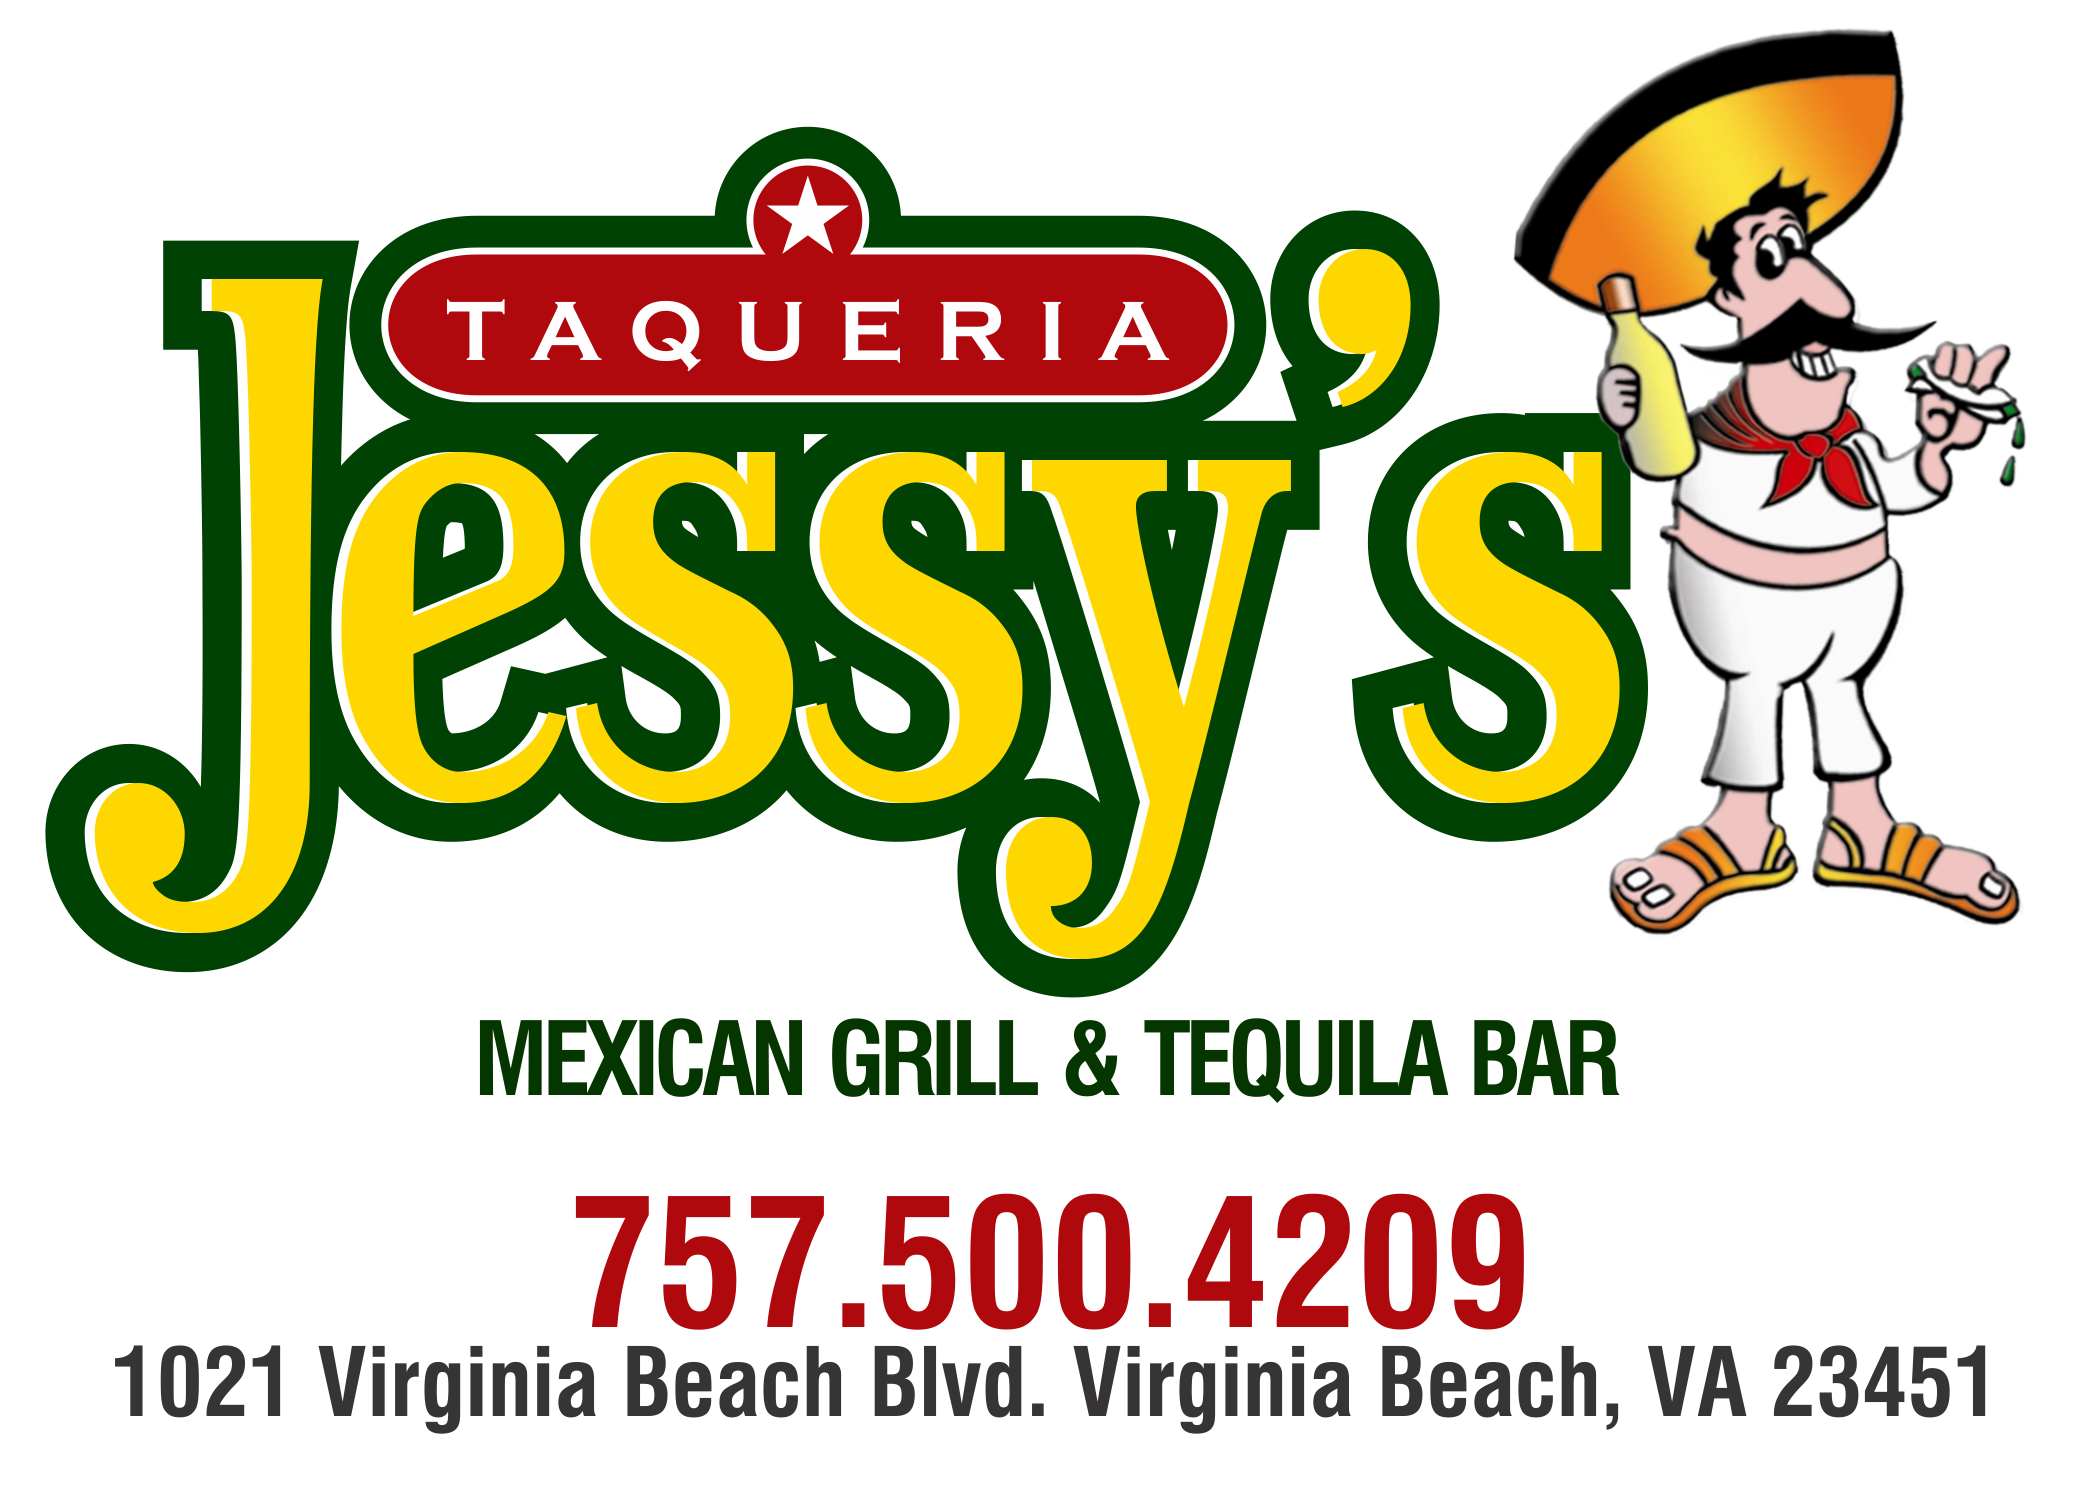 jessys-taqueria-logo